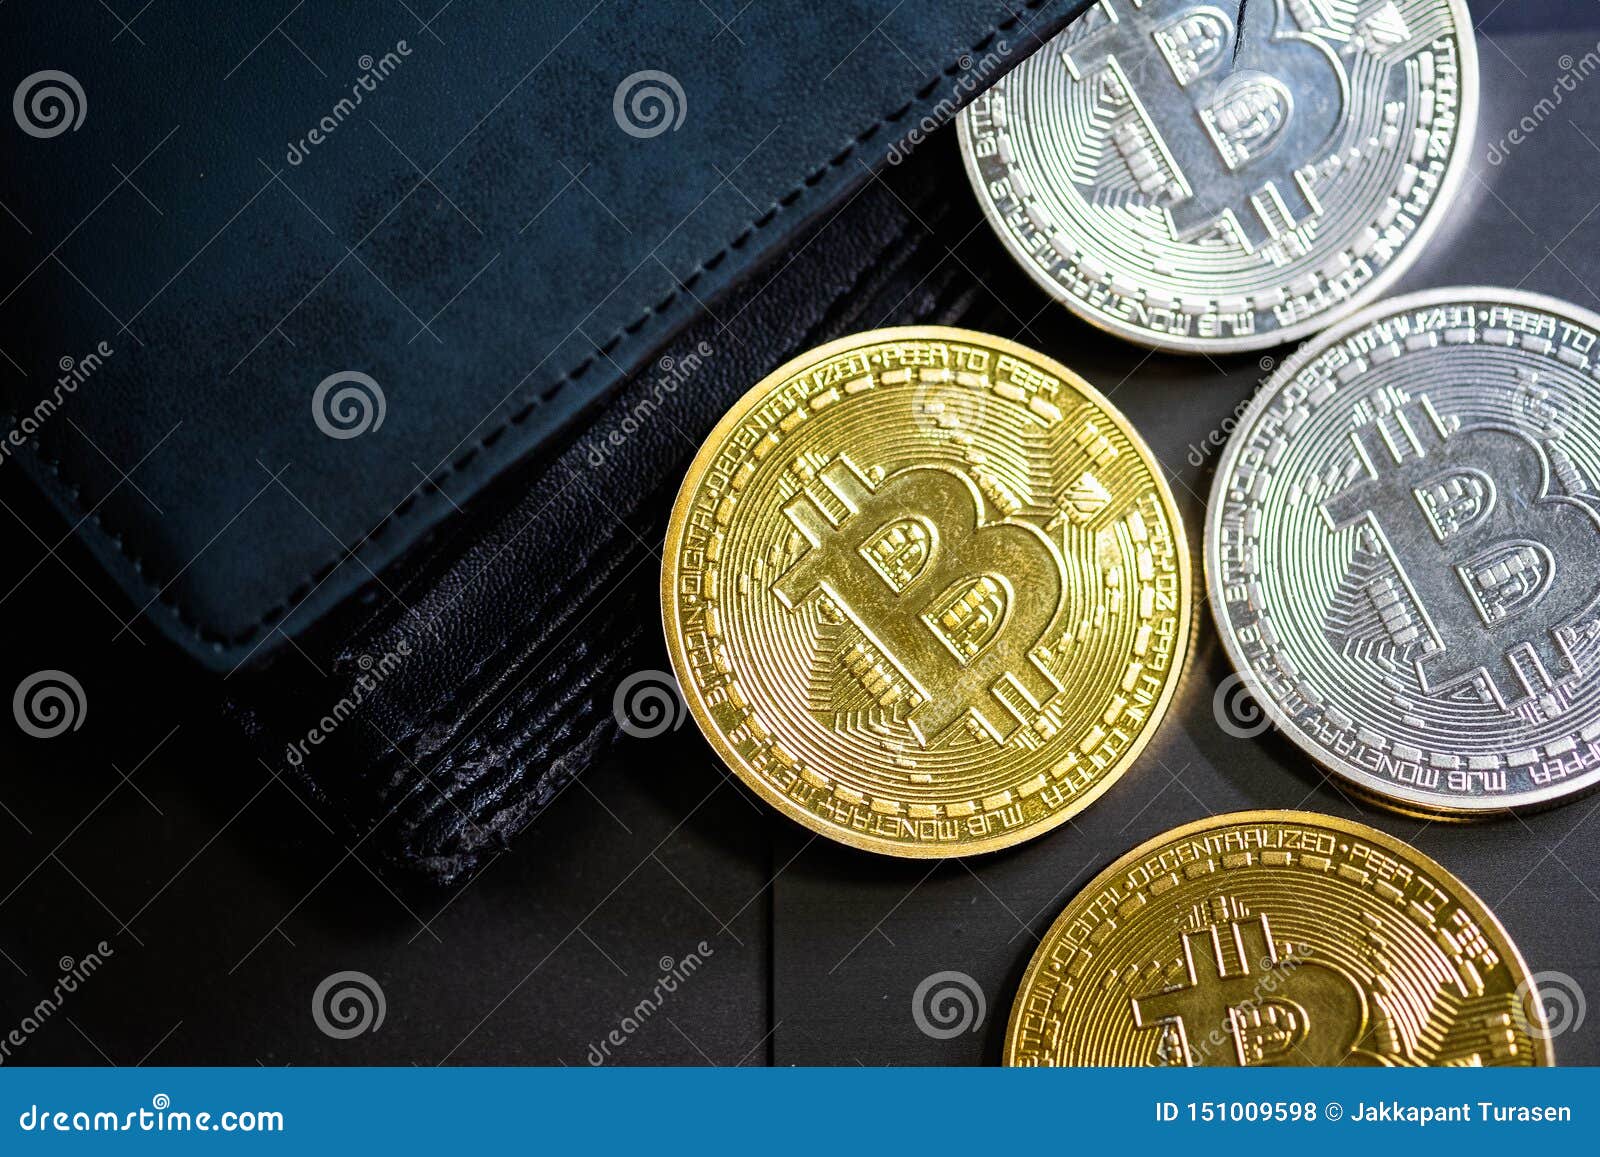 bitcoin wallet crypto mining